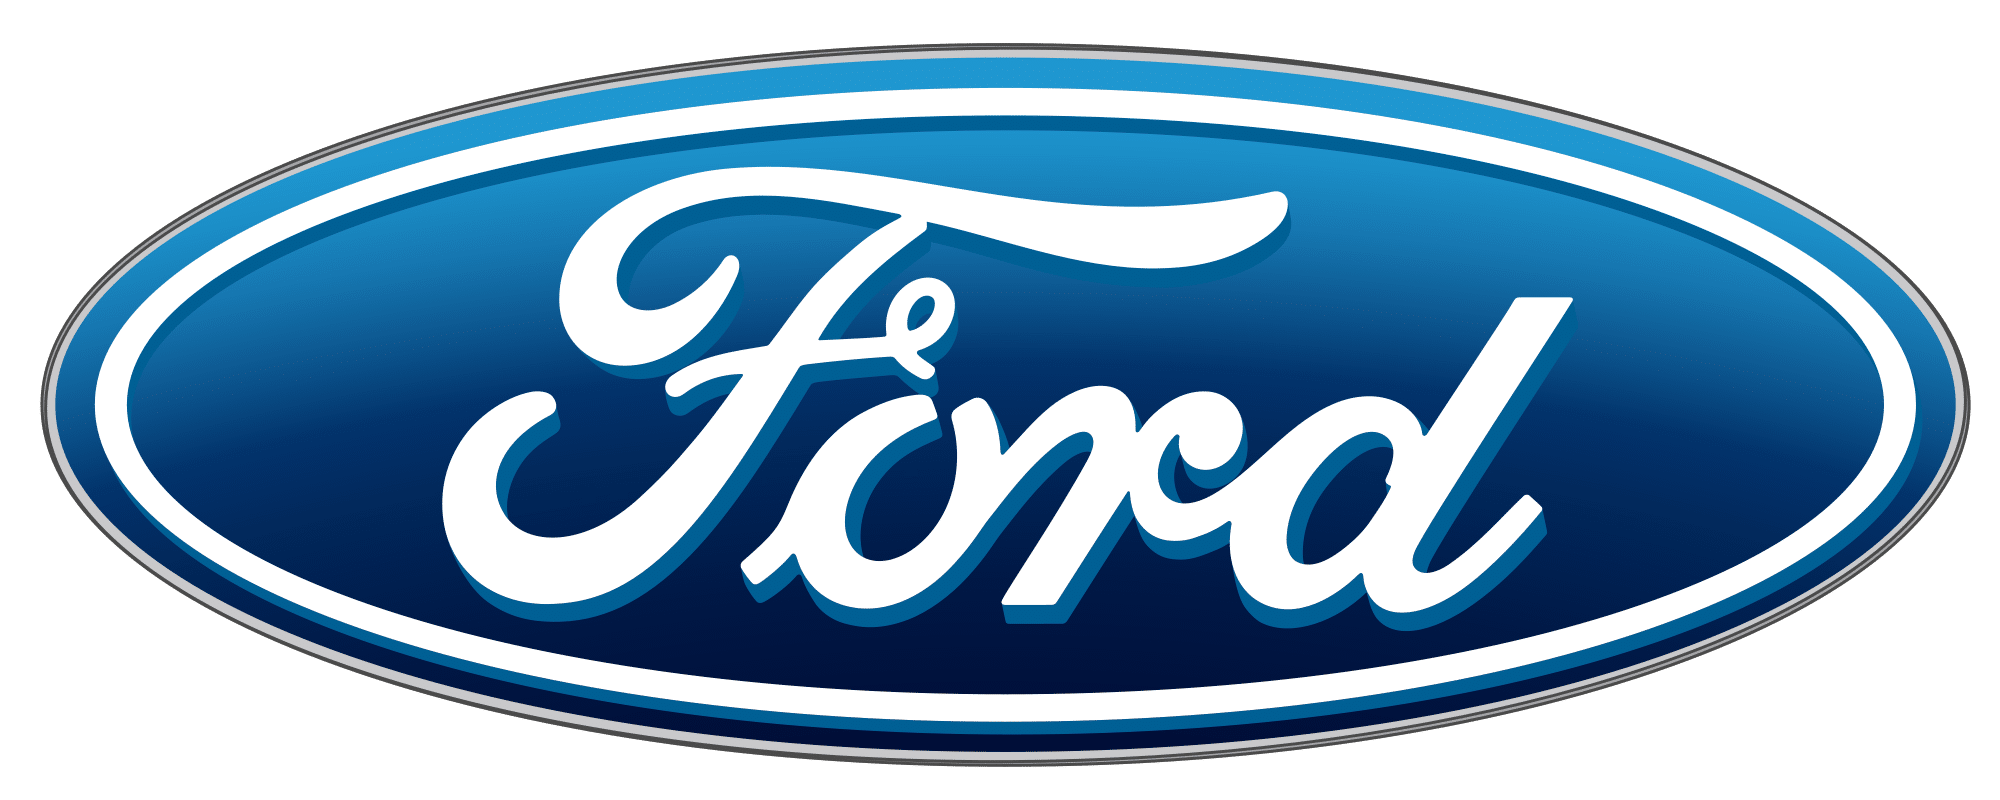 Ford rappelle 850 000 voitures pour problème d’airbag